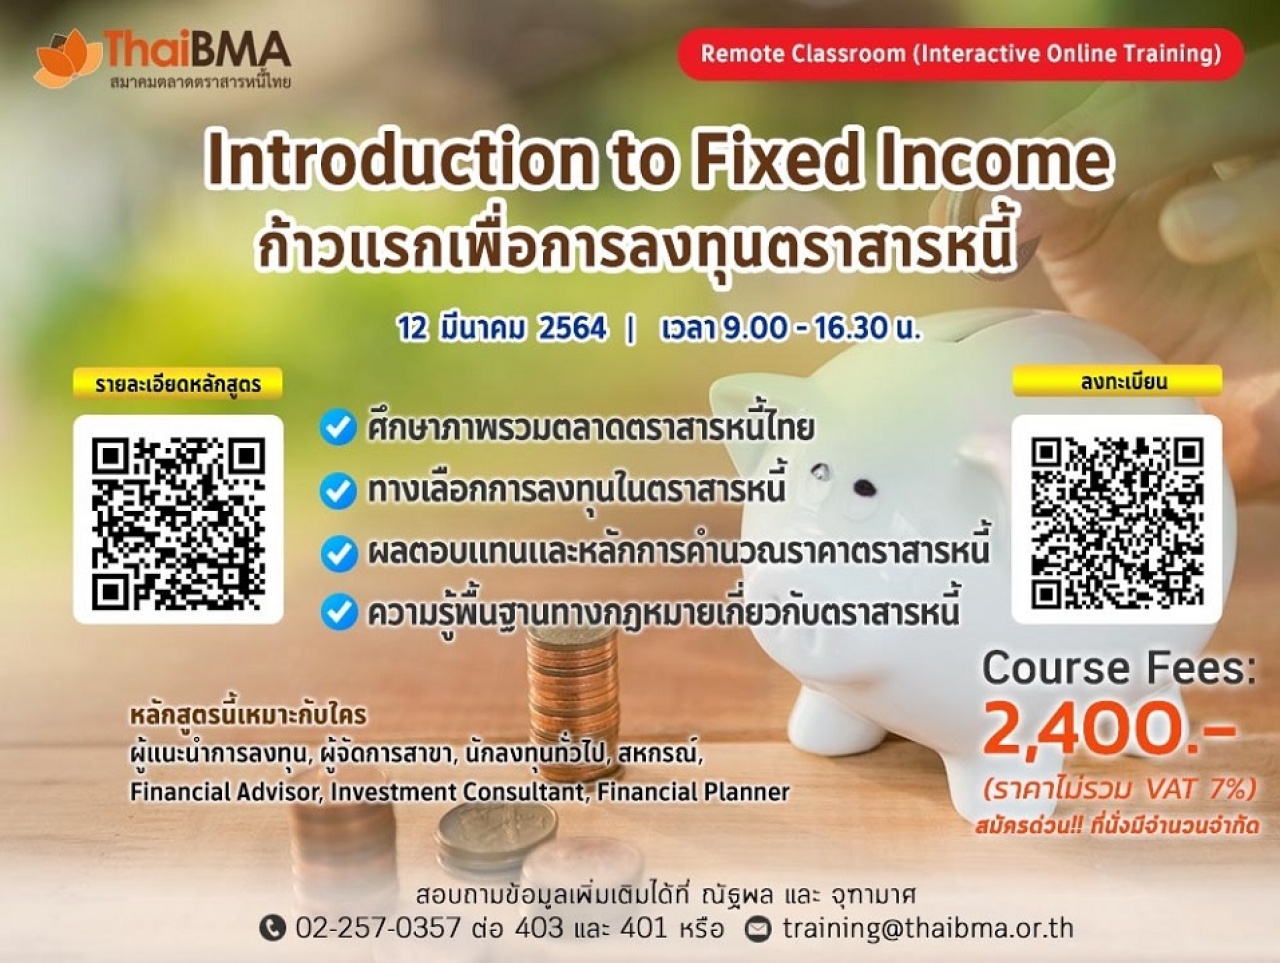 Introduction to fixed income (ก้าวแรกเพื่อการลงทุนตราสารหนี้)